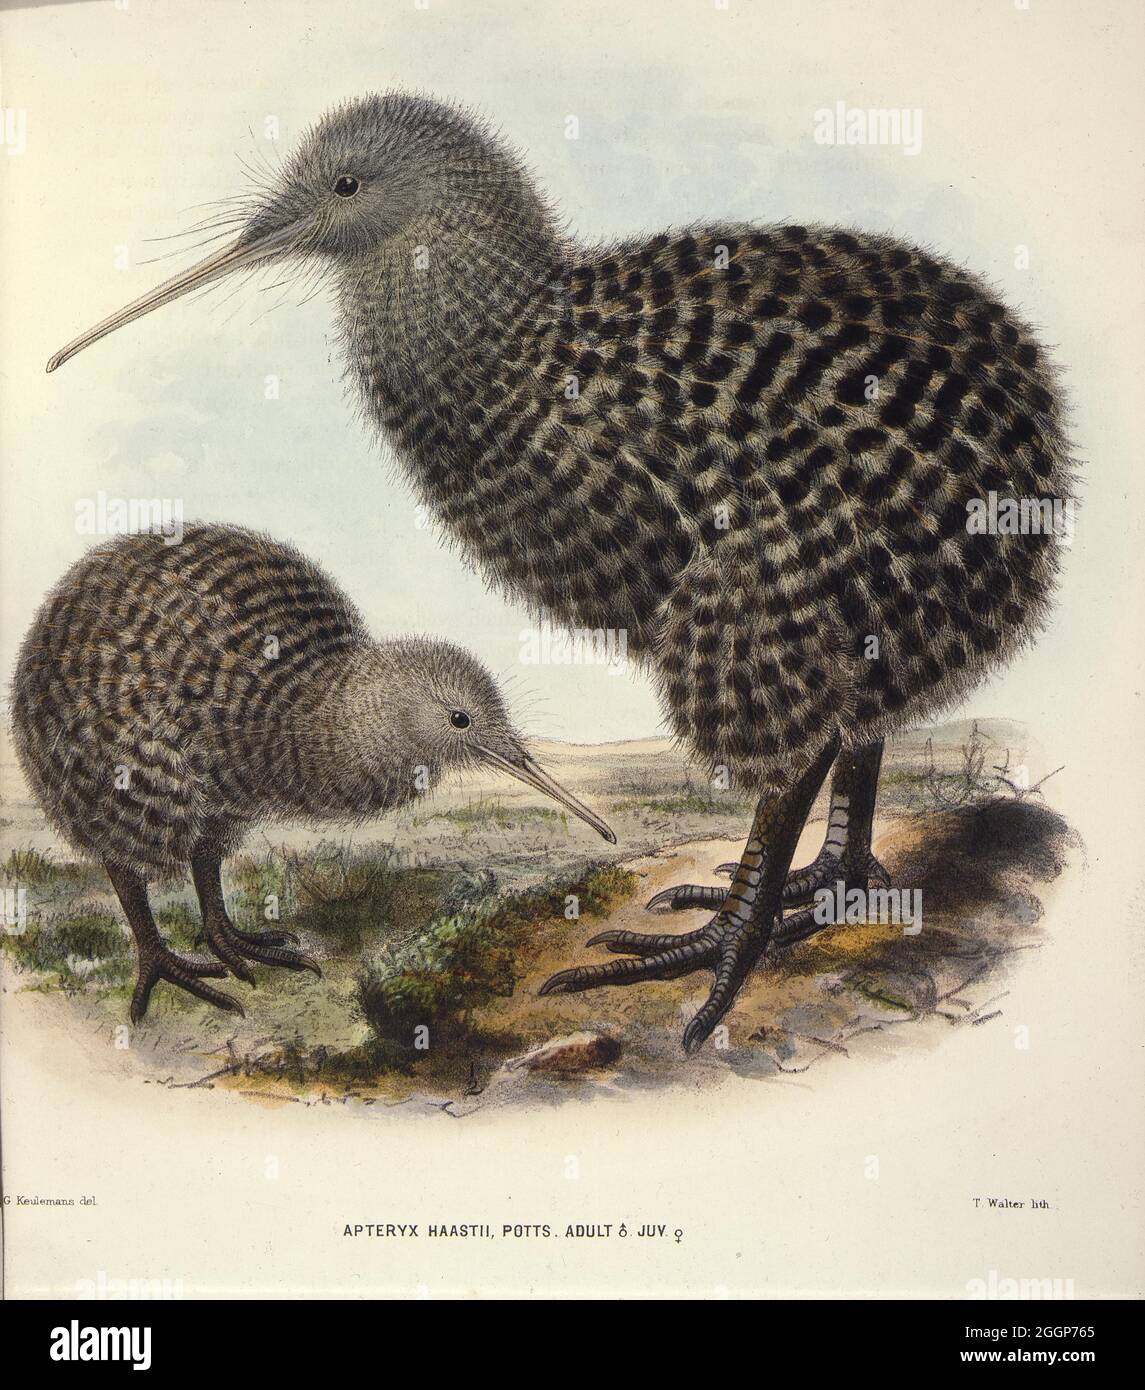 Zeigt ein erwachsenes Männchen mit kleinen gefleckten Kiwi, von der Seite betrachtet, mit einem jungen Weibchen, beide in einer offenen Landschaft. Stockfoto